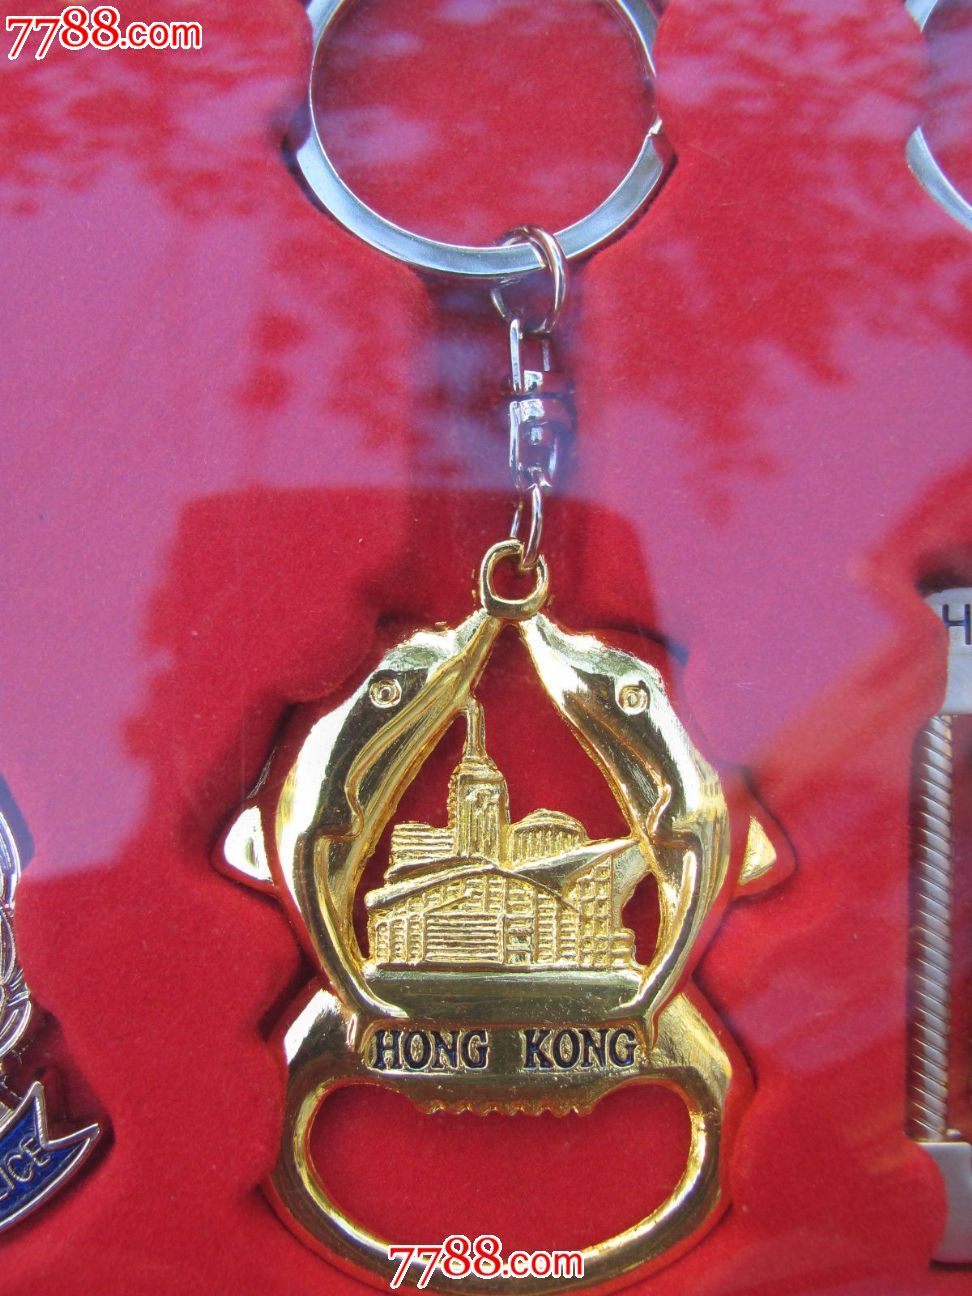 香港旅游纪念品-价格:50元-se20489042-其他铁